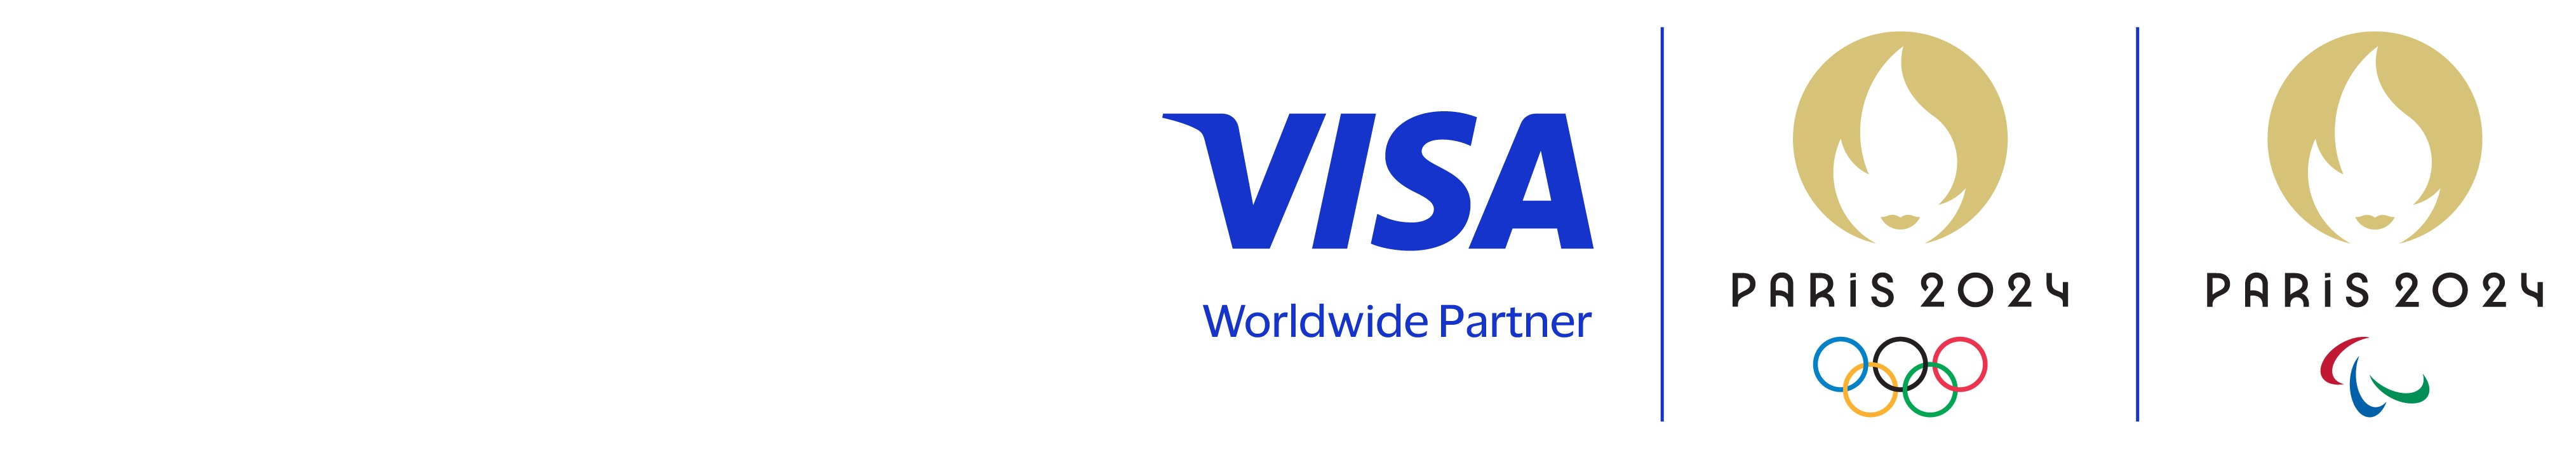 郵政Visa金融卡採用2024年巴黎奧運主題卡面 全臺首發 期間限定限量推出